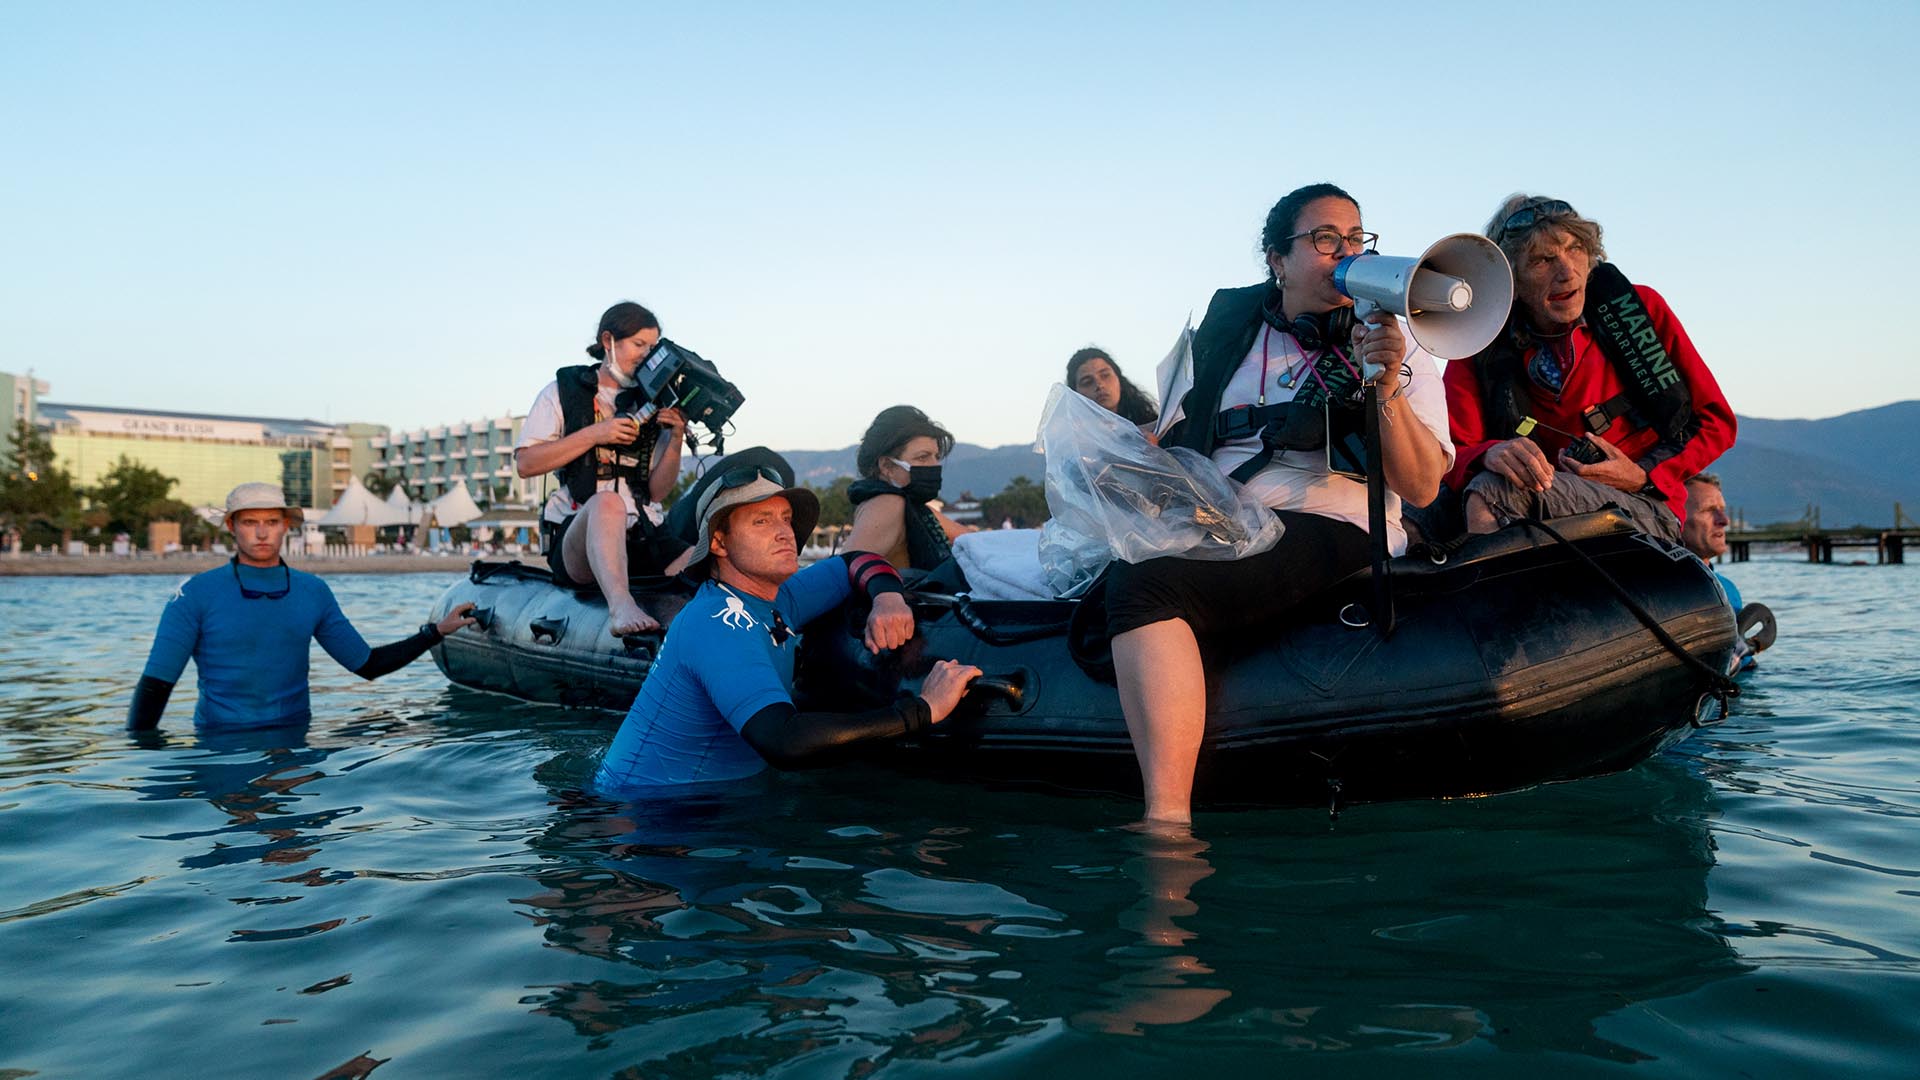 El detrás de escena de la balsa con la que curzaron el mar los refugiados

Crédito: Netflix